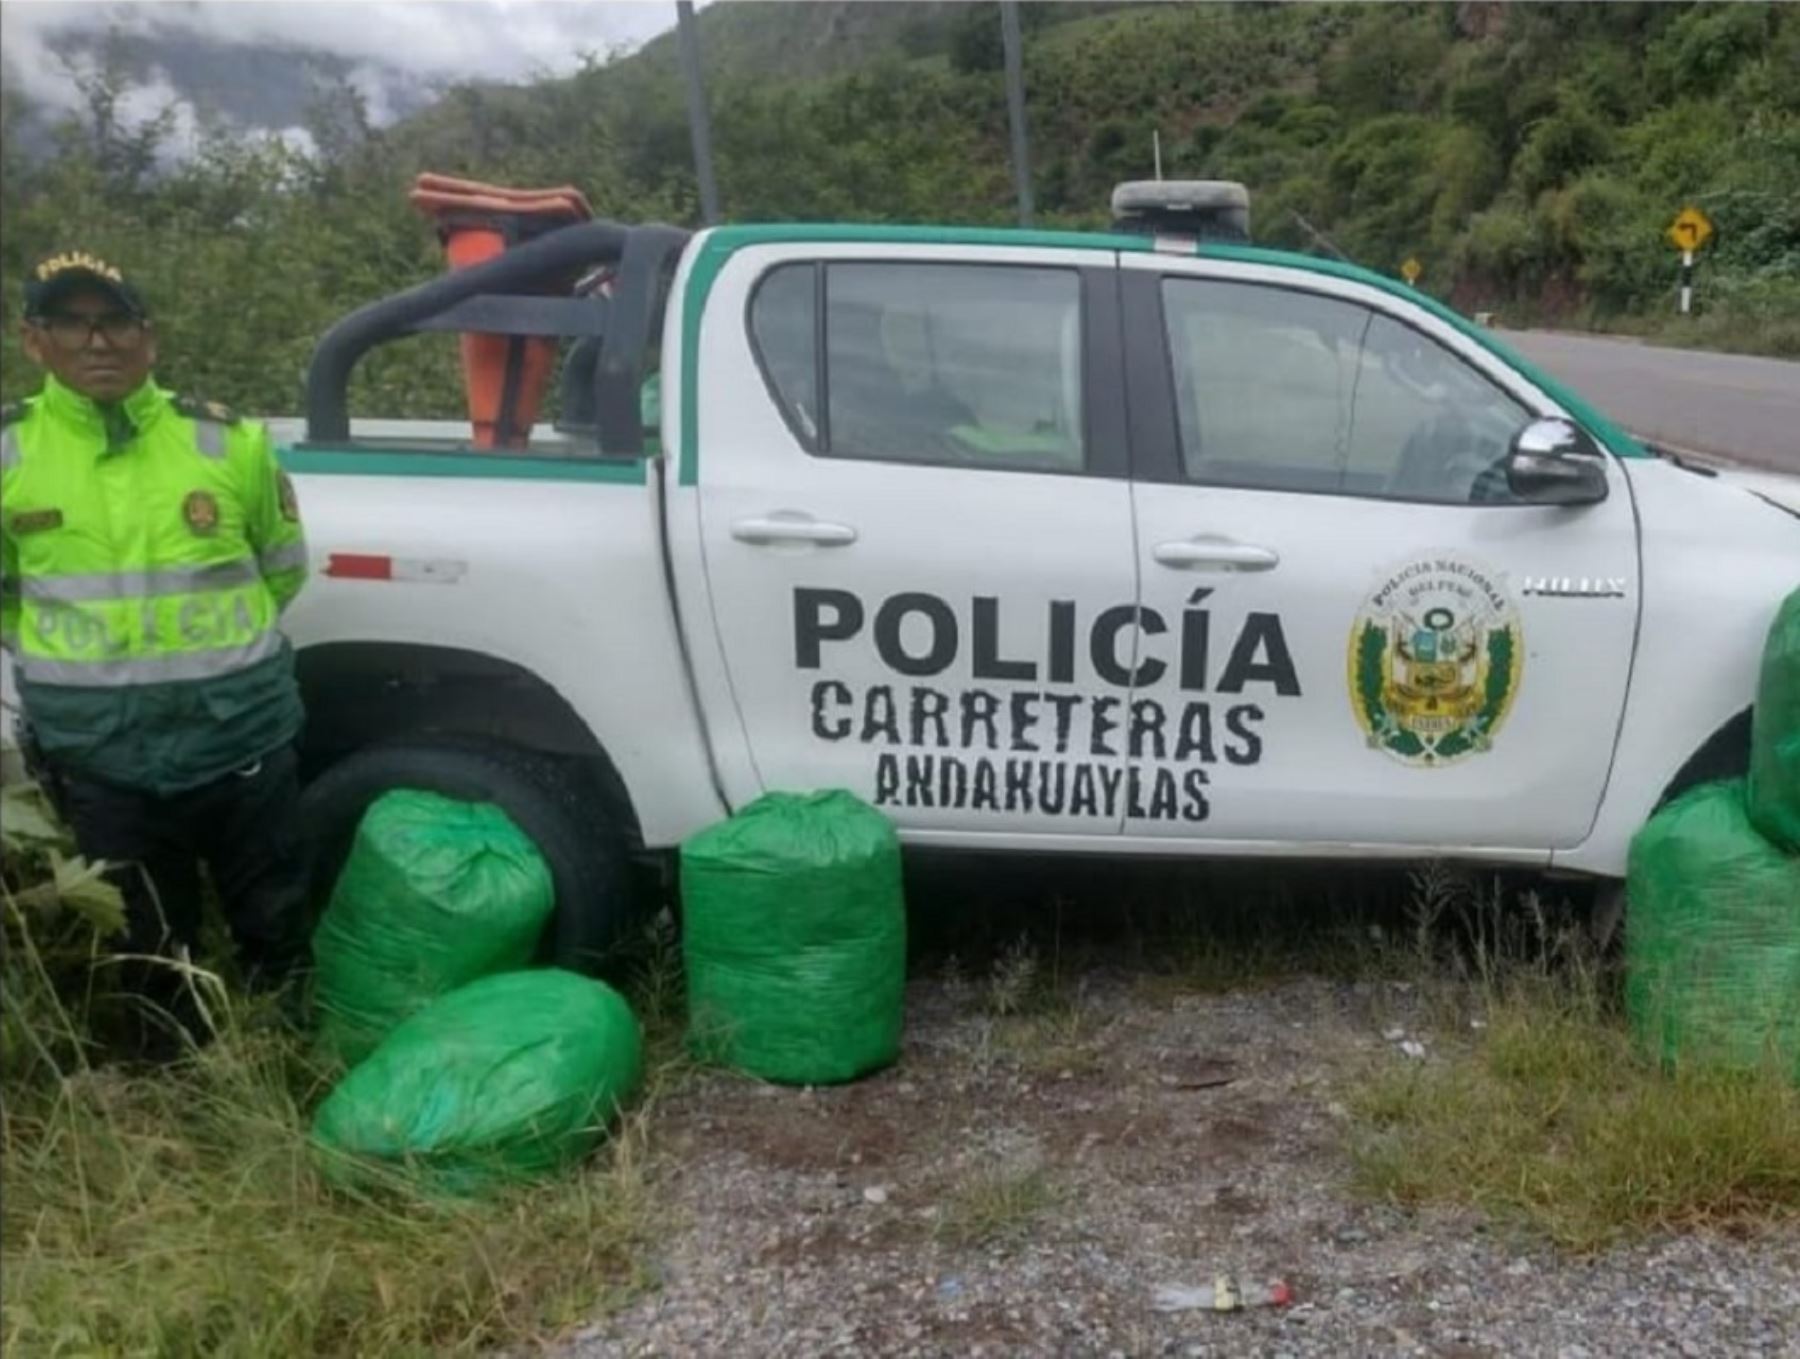 Más de 70 kg de hoja de coca incautó la Policía Nacional durante una intervención efectuada en el distrito y provincia de Chincheros, en Apurímac.